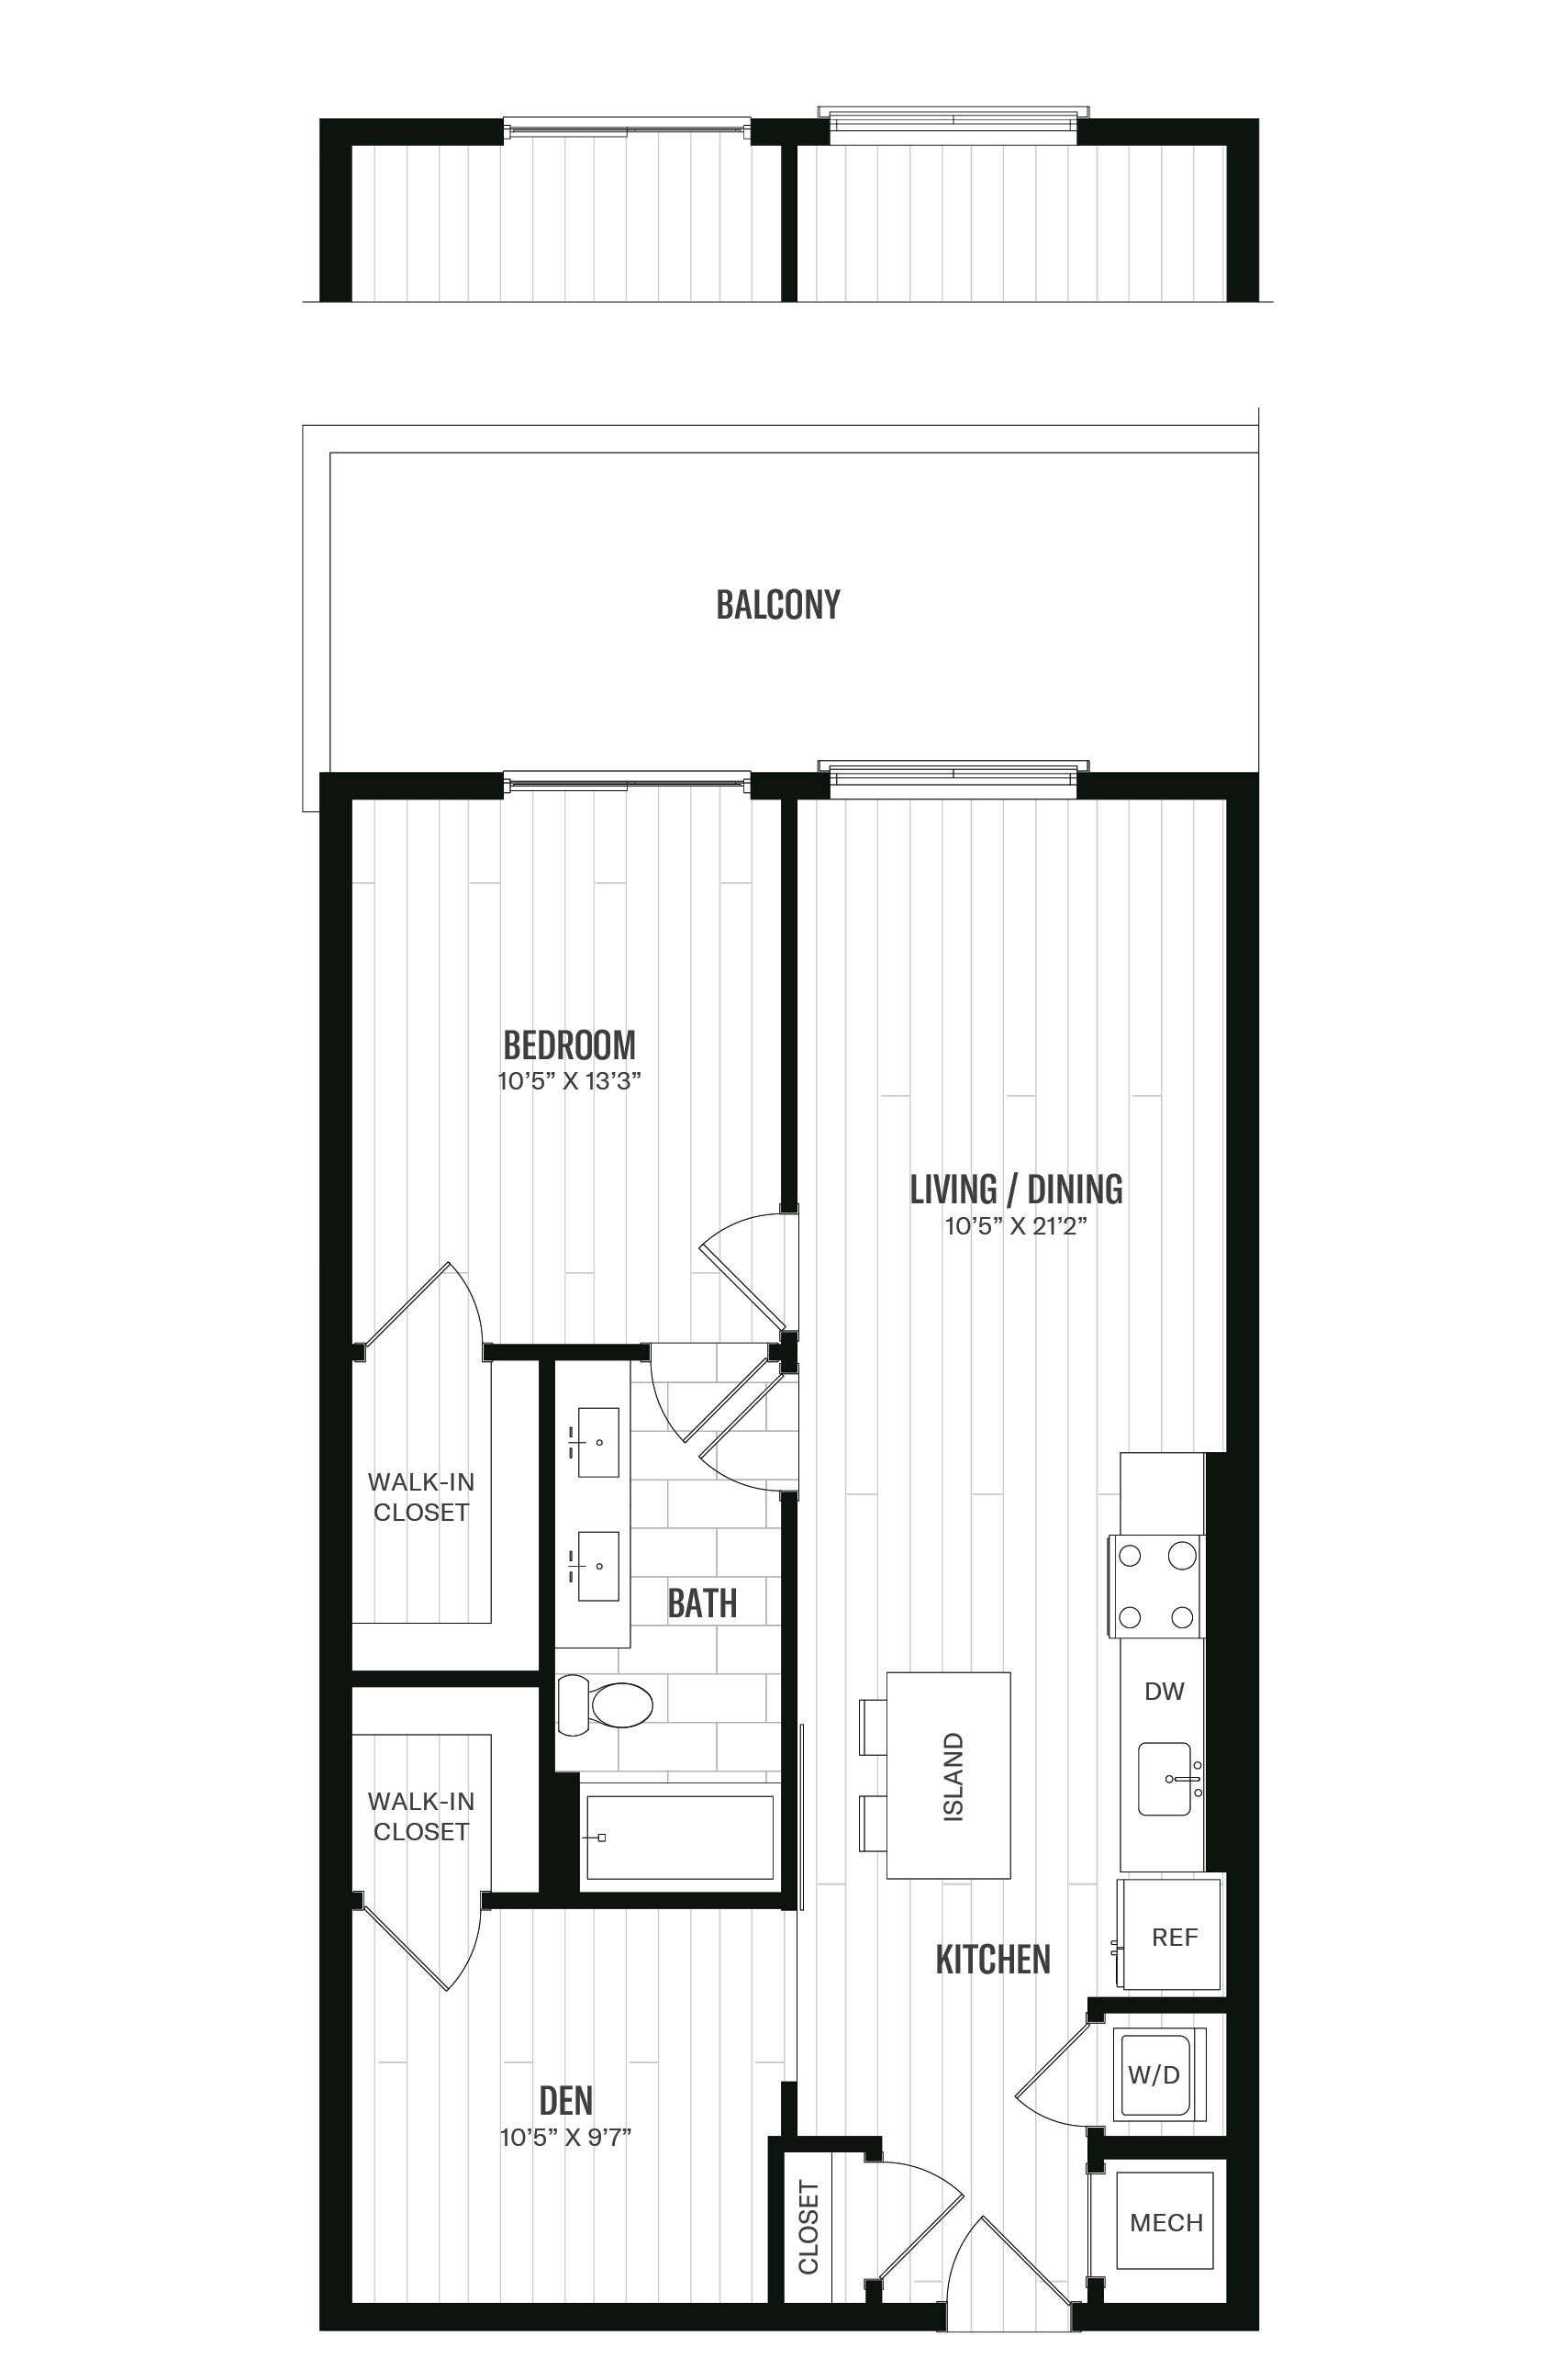 Floorplan image of unit 234